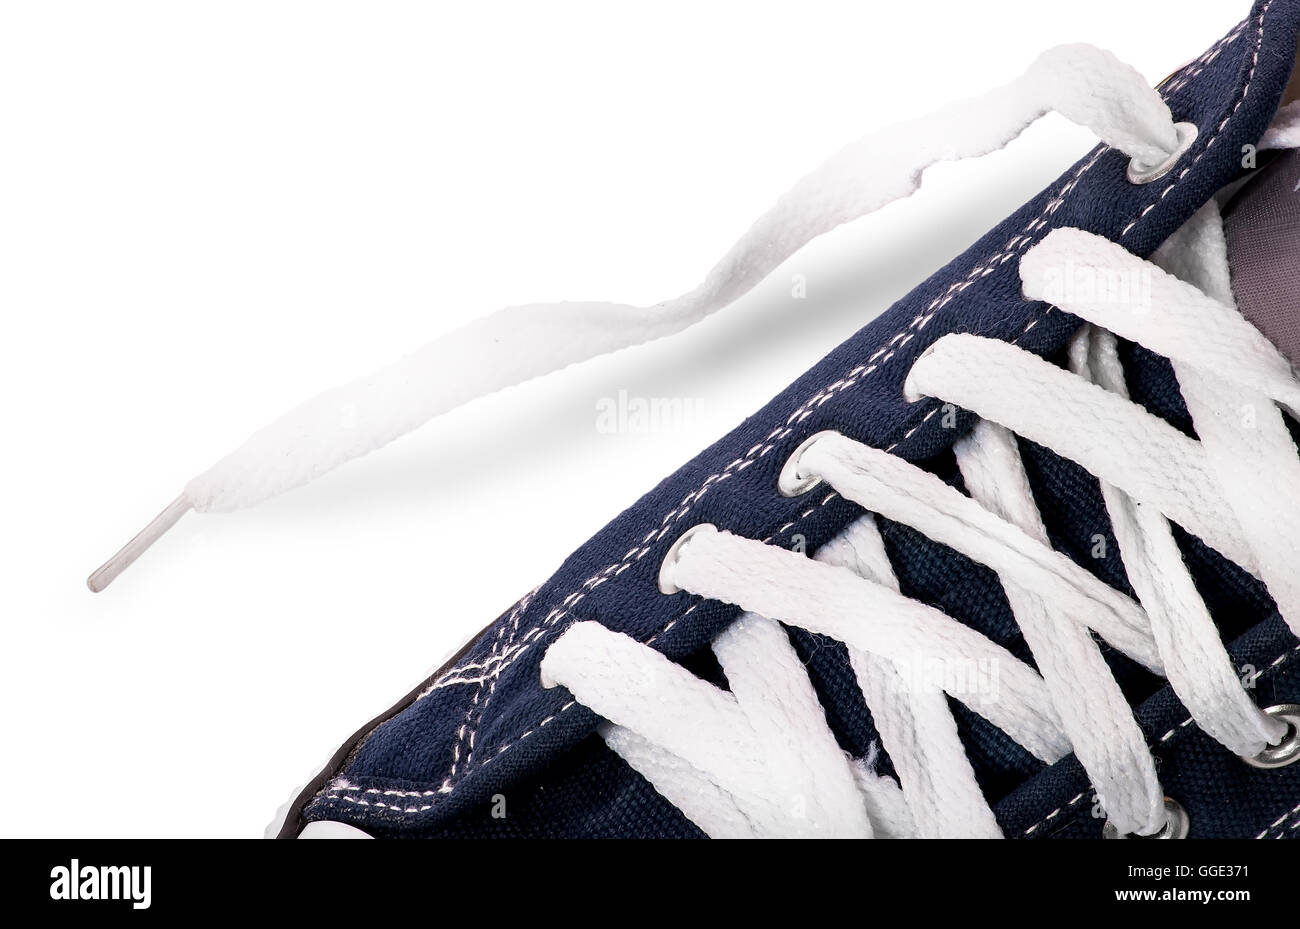 Allacciatura Closeup su scarpe da ginnastica isolati su sfondo bianco Foto Stock